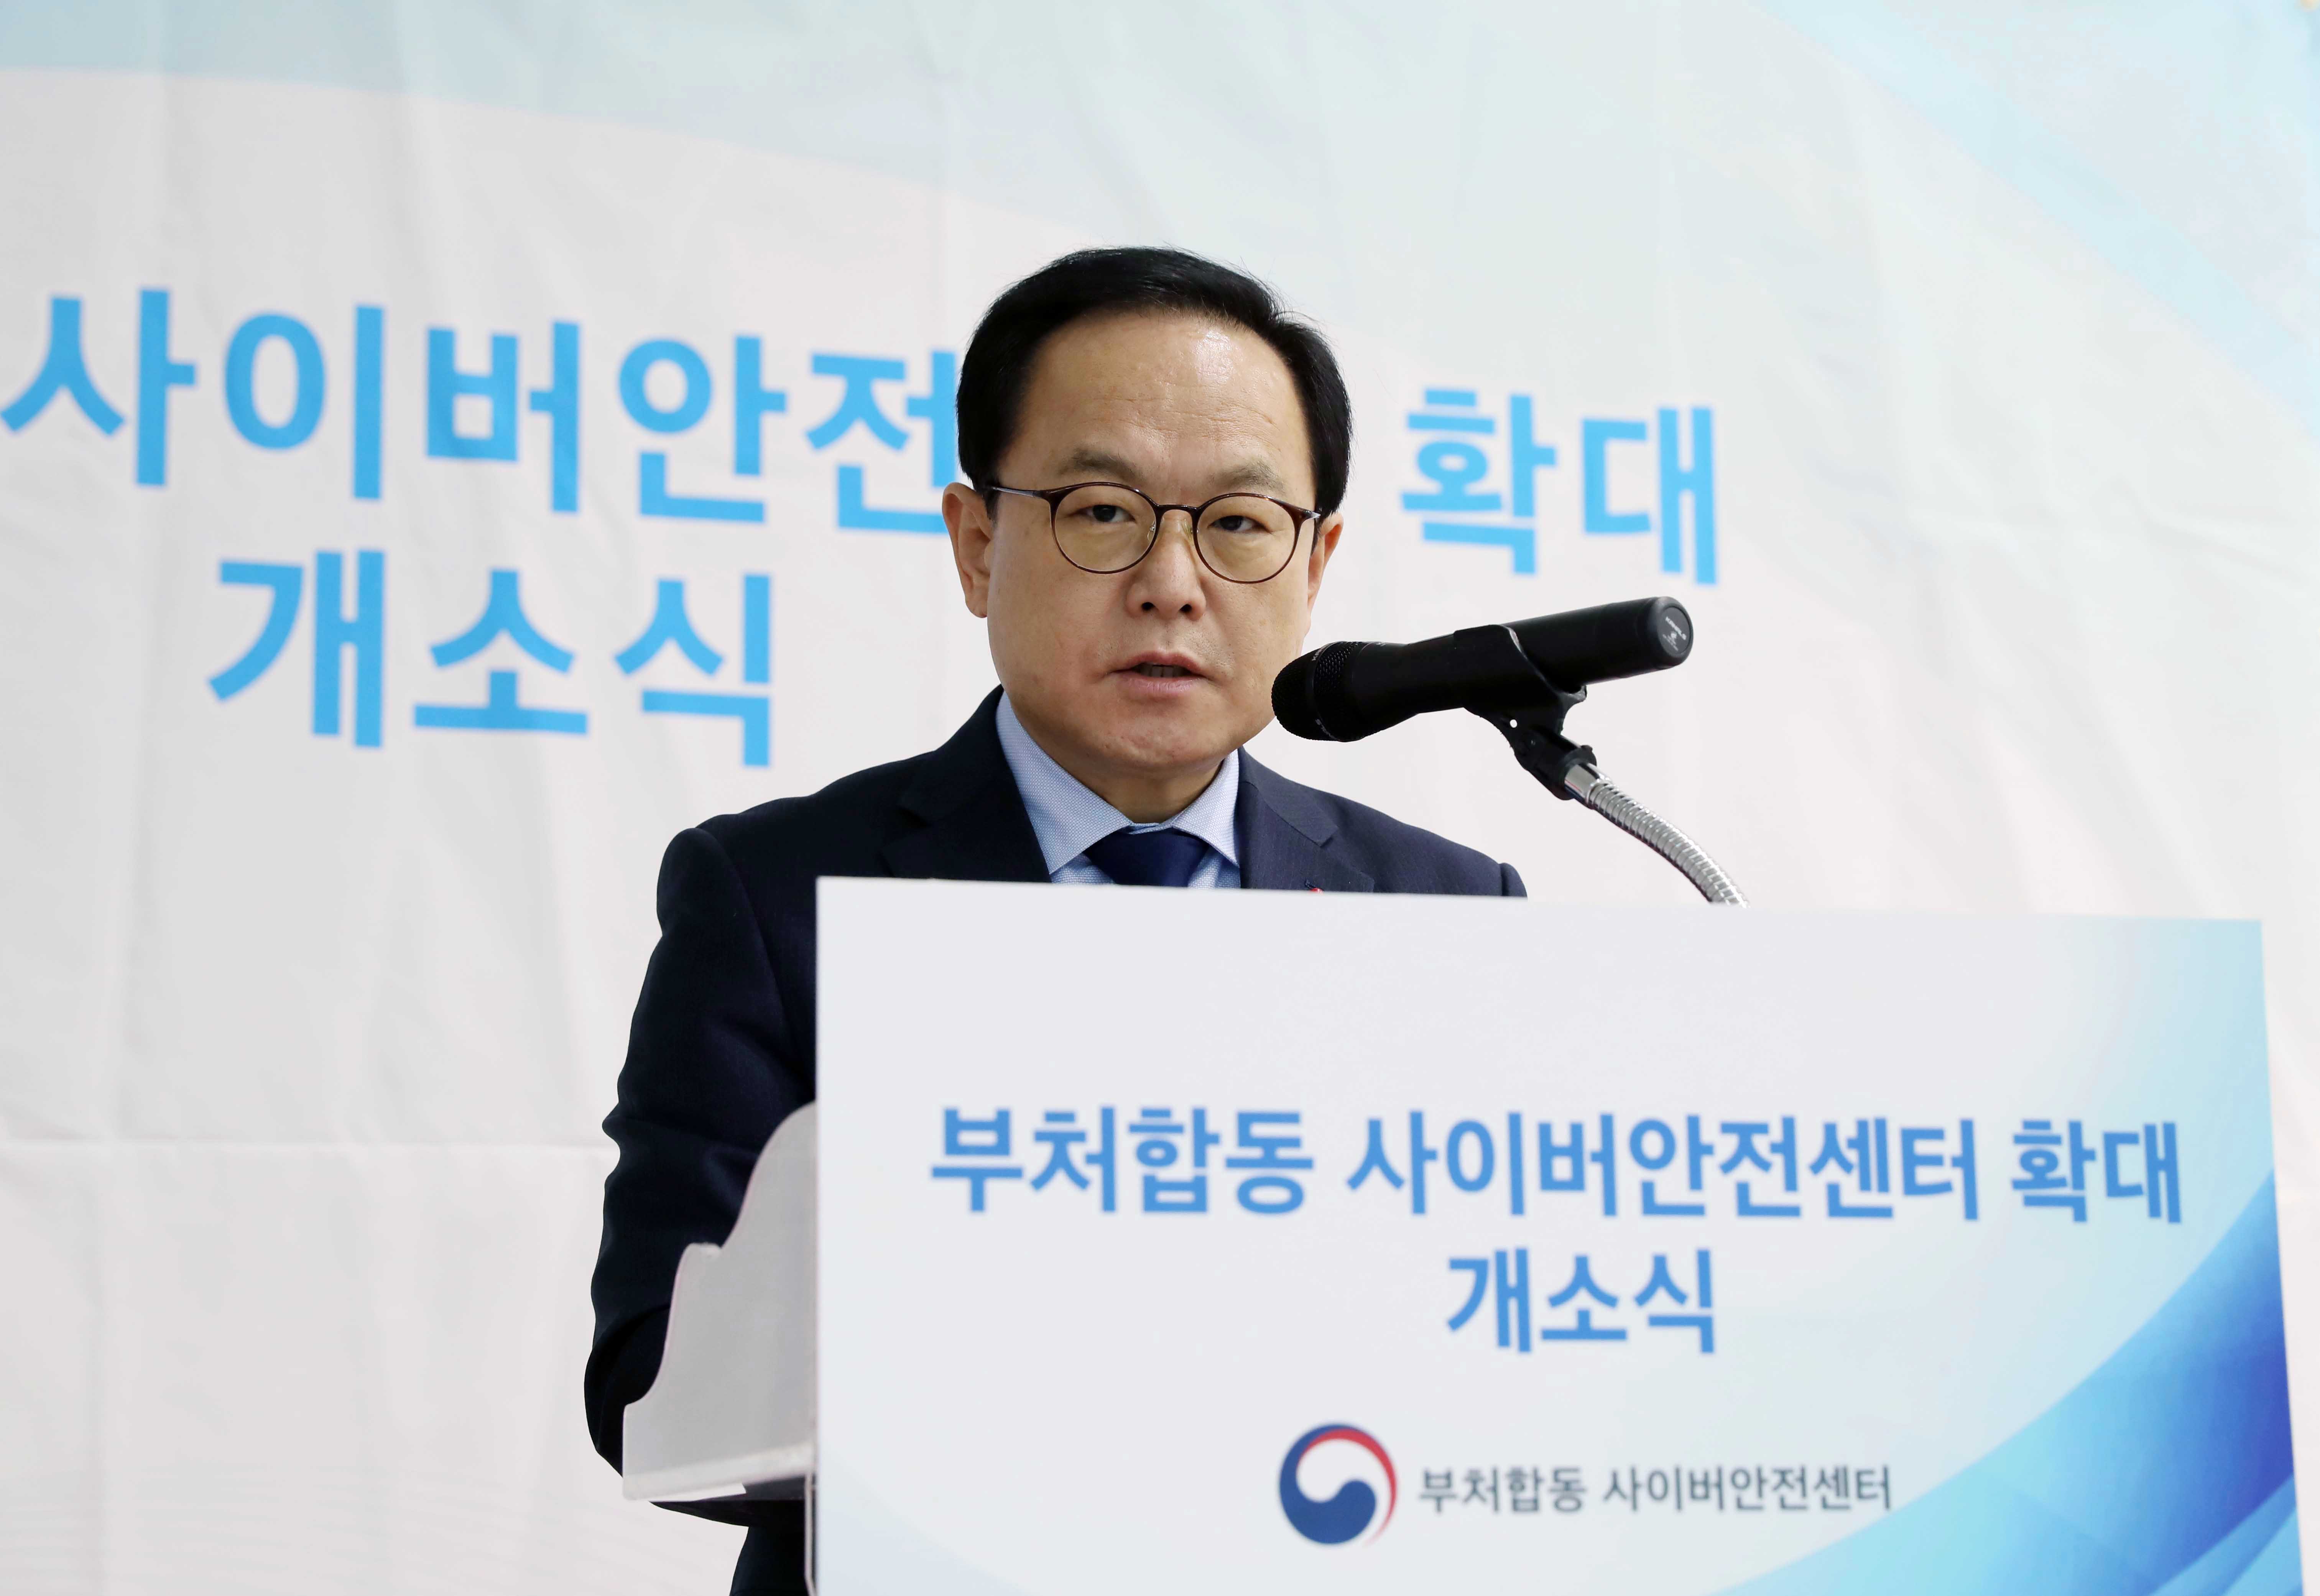 김승호 인사혁신처장이 12월 15일 세종시 정부세종컨벤션센터에서 열린 '부처합동 사이버안전센터 확대 개소식'에서 축사 하는 모습.